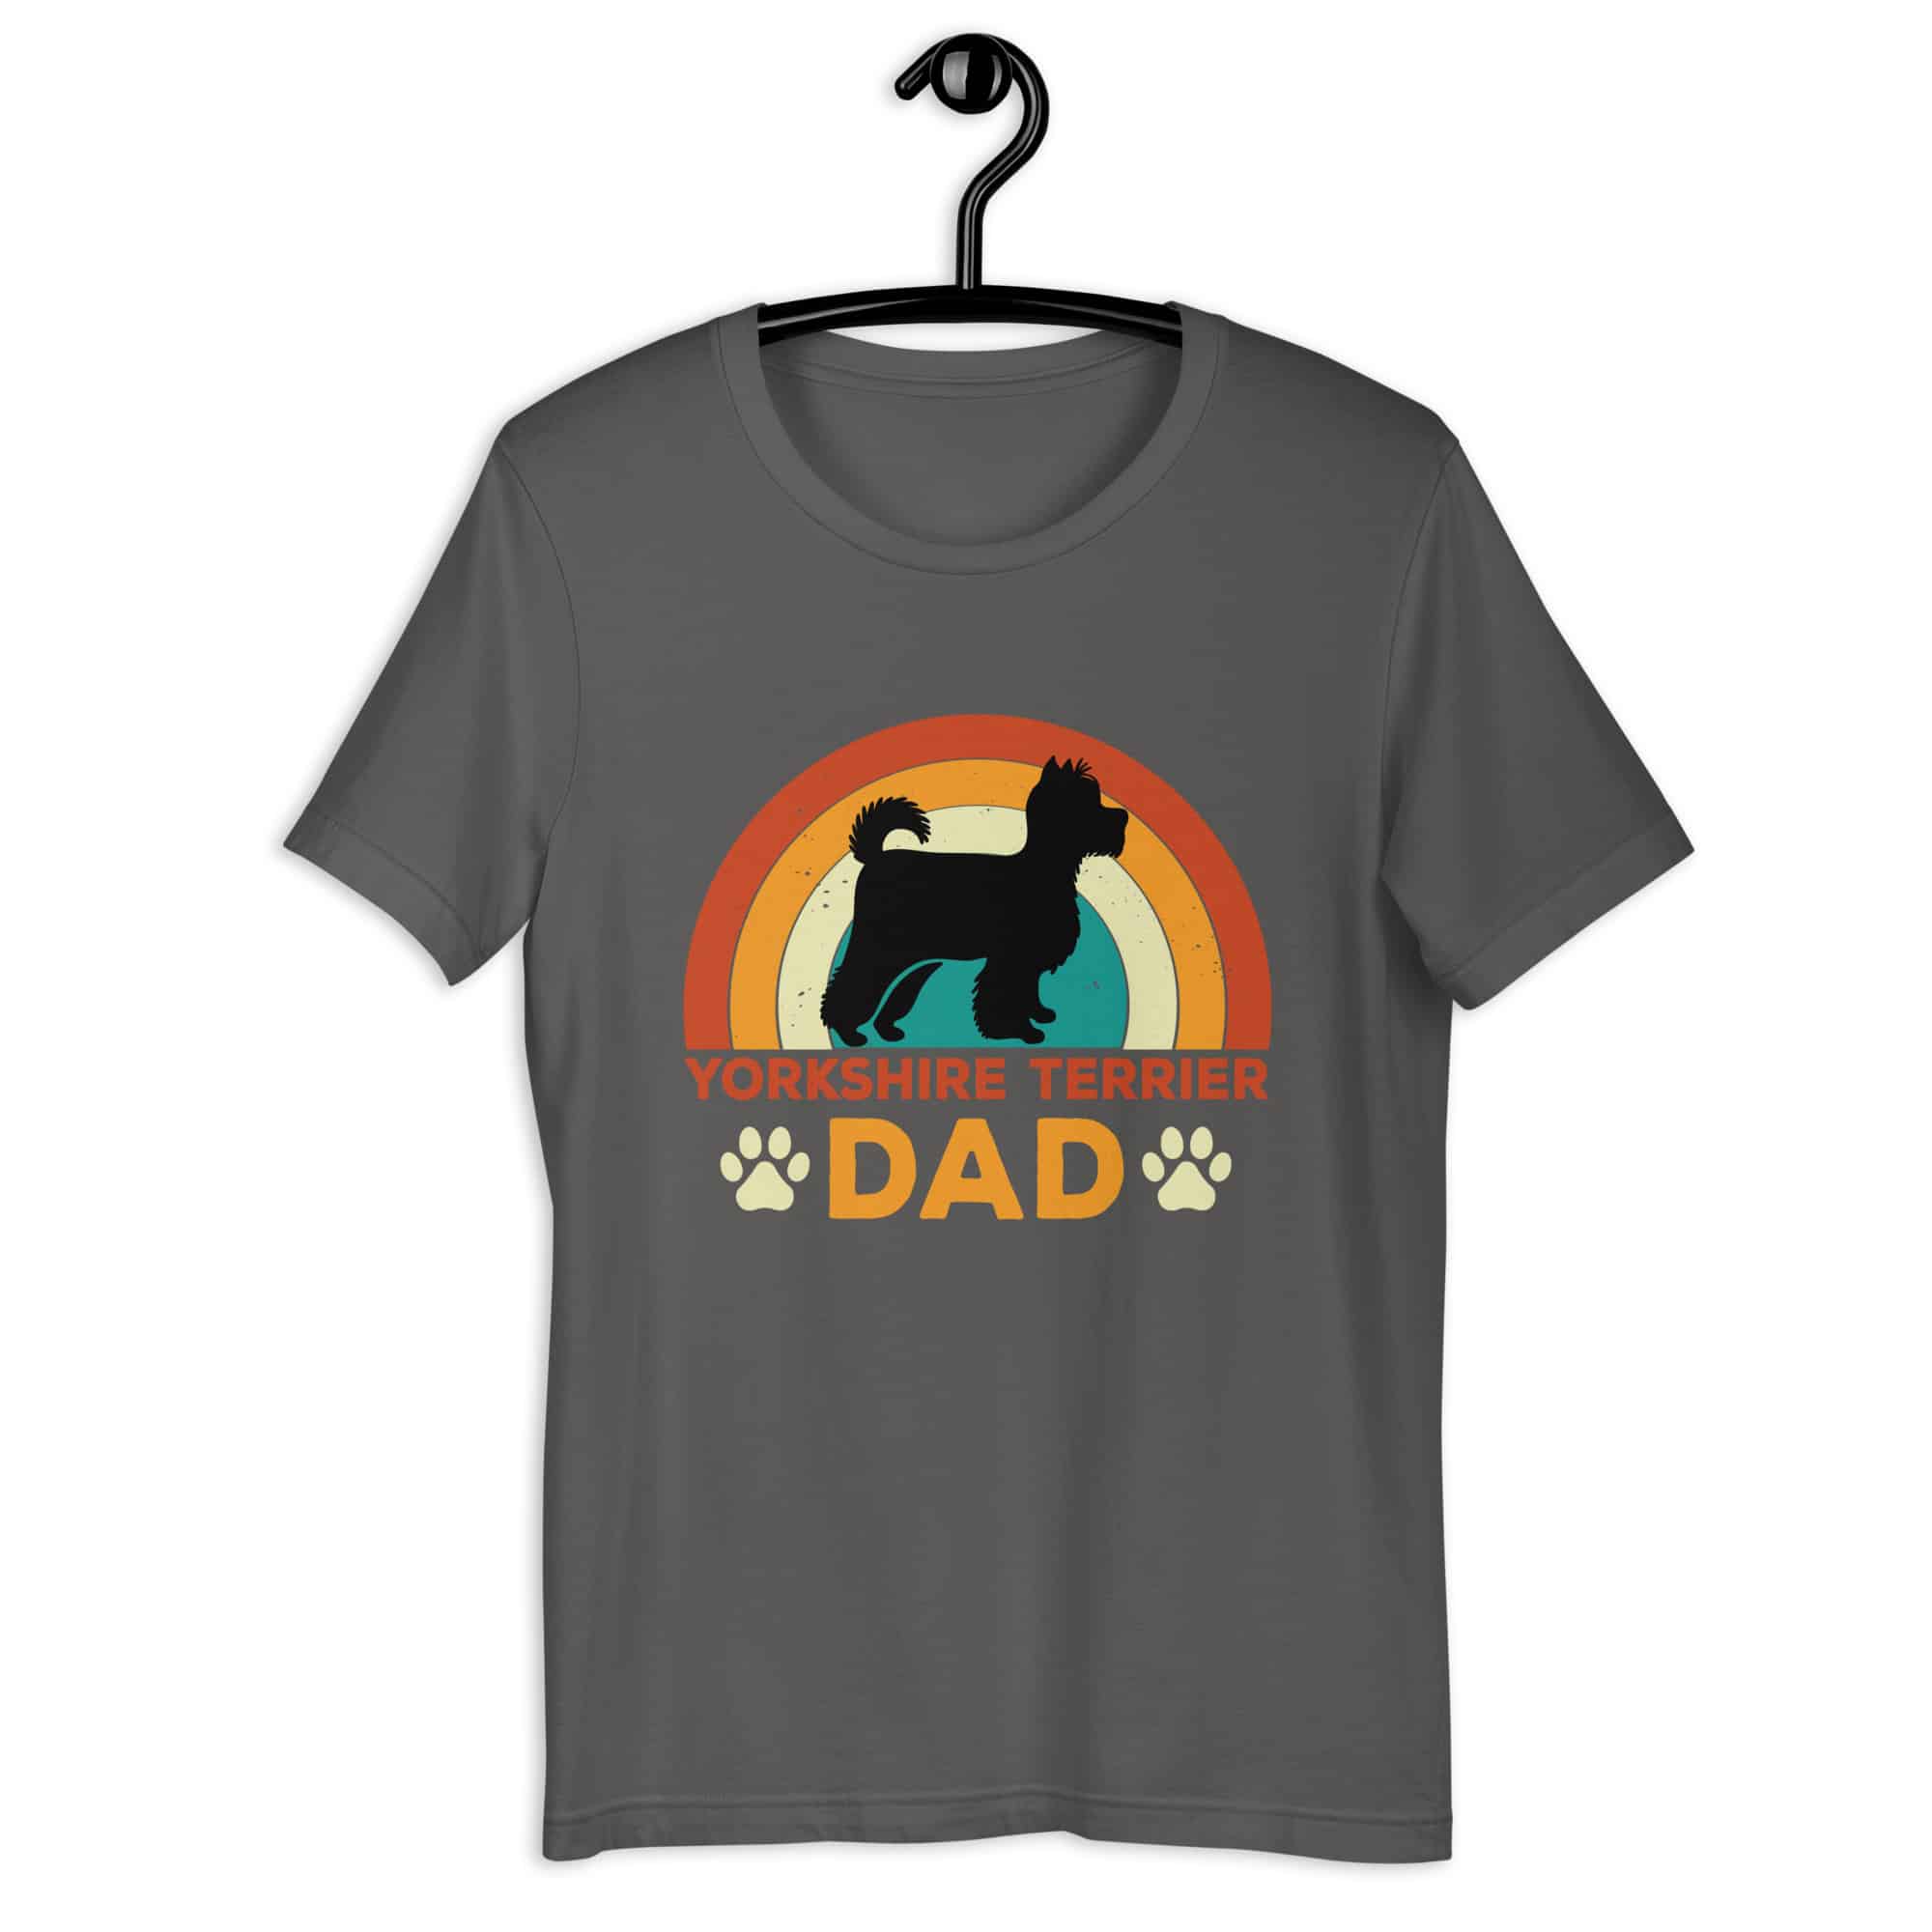 Yorkshire Terrier Dad Unisex T-Shirt